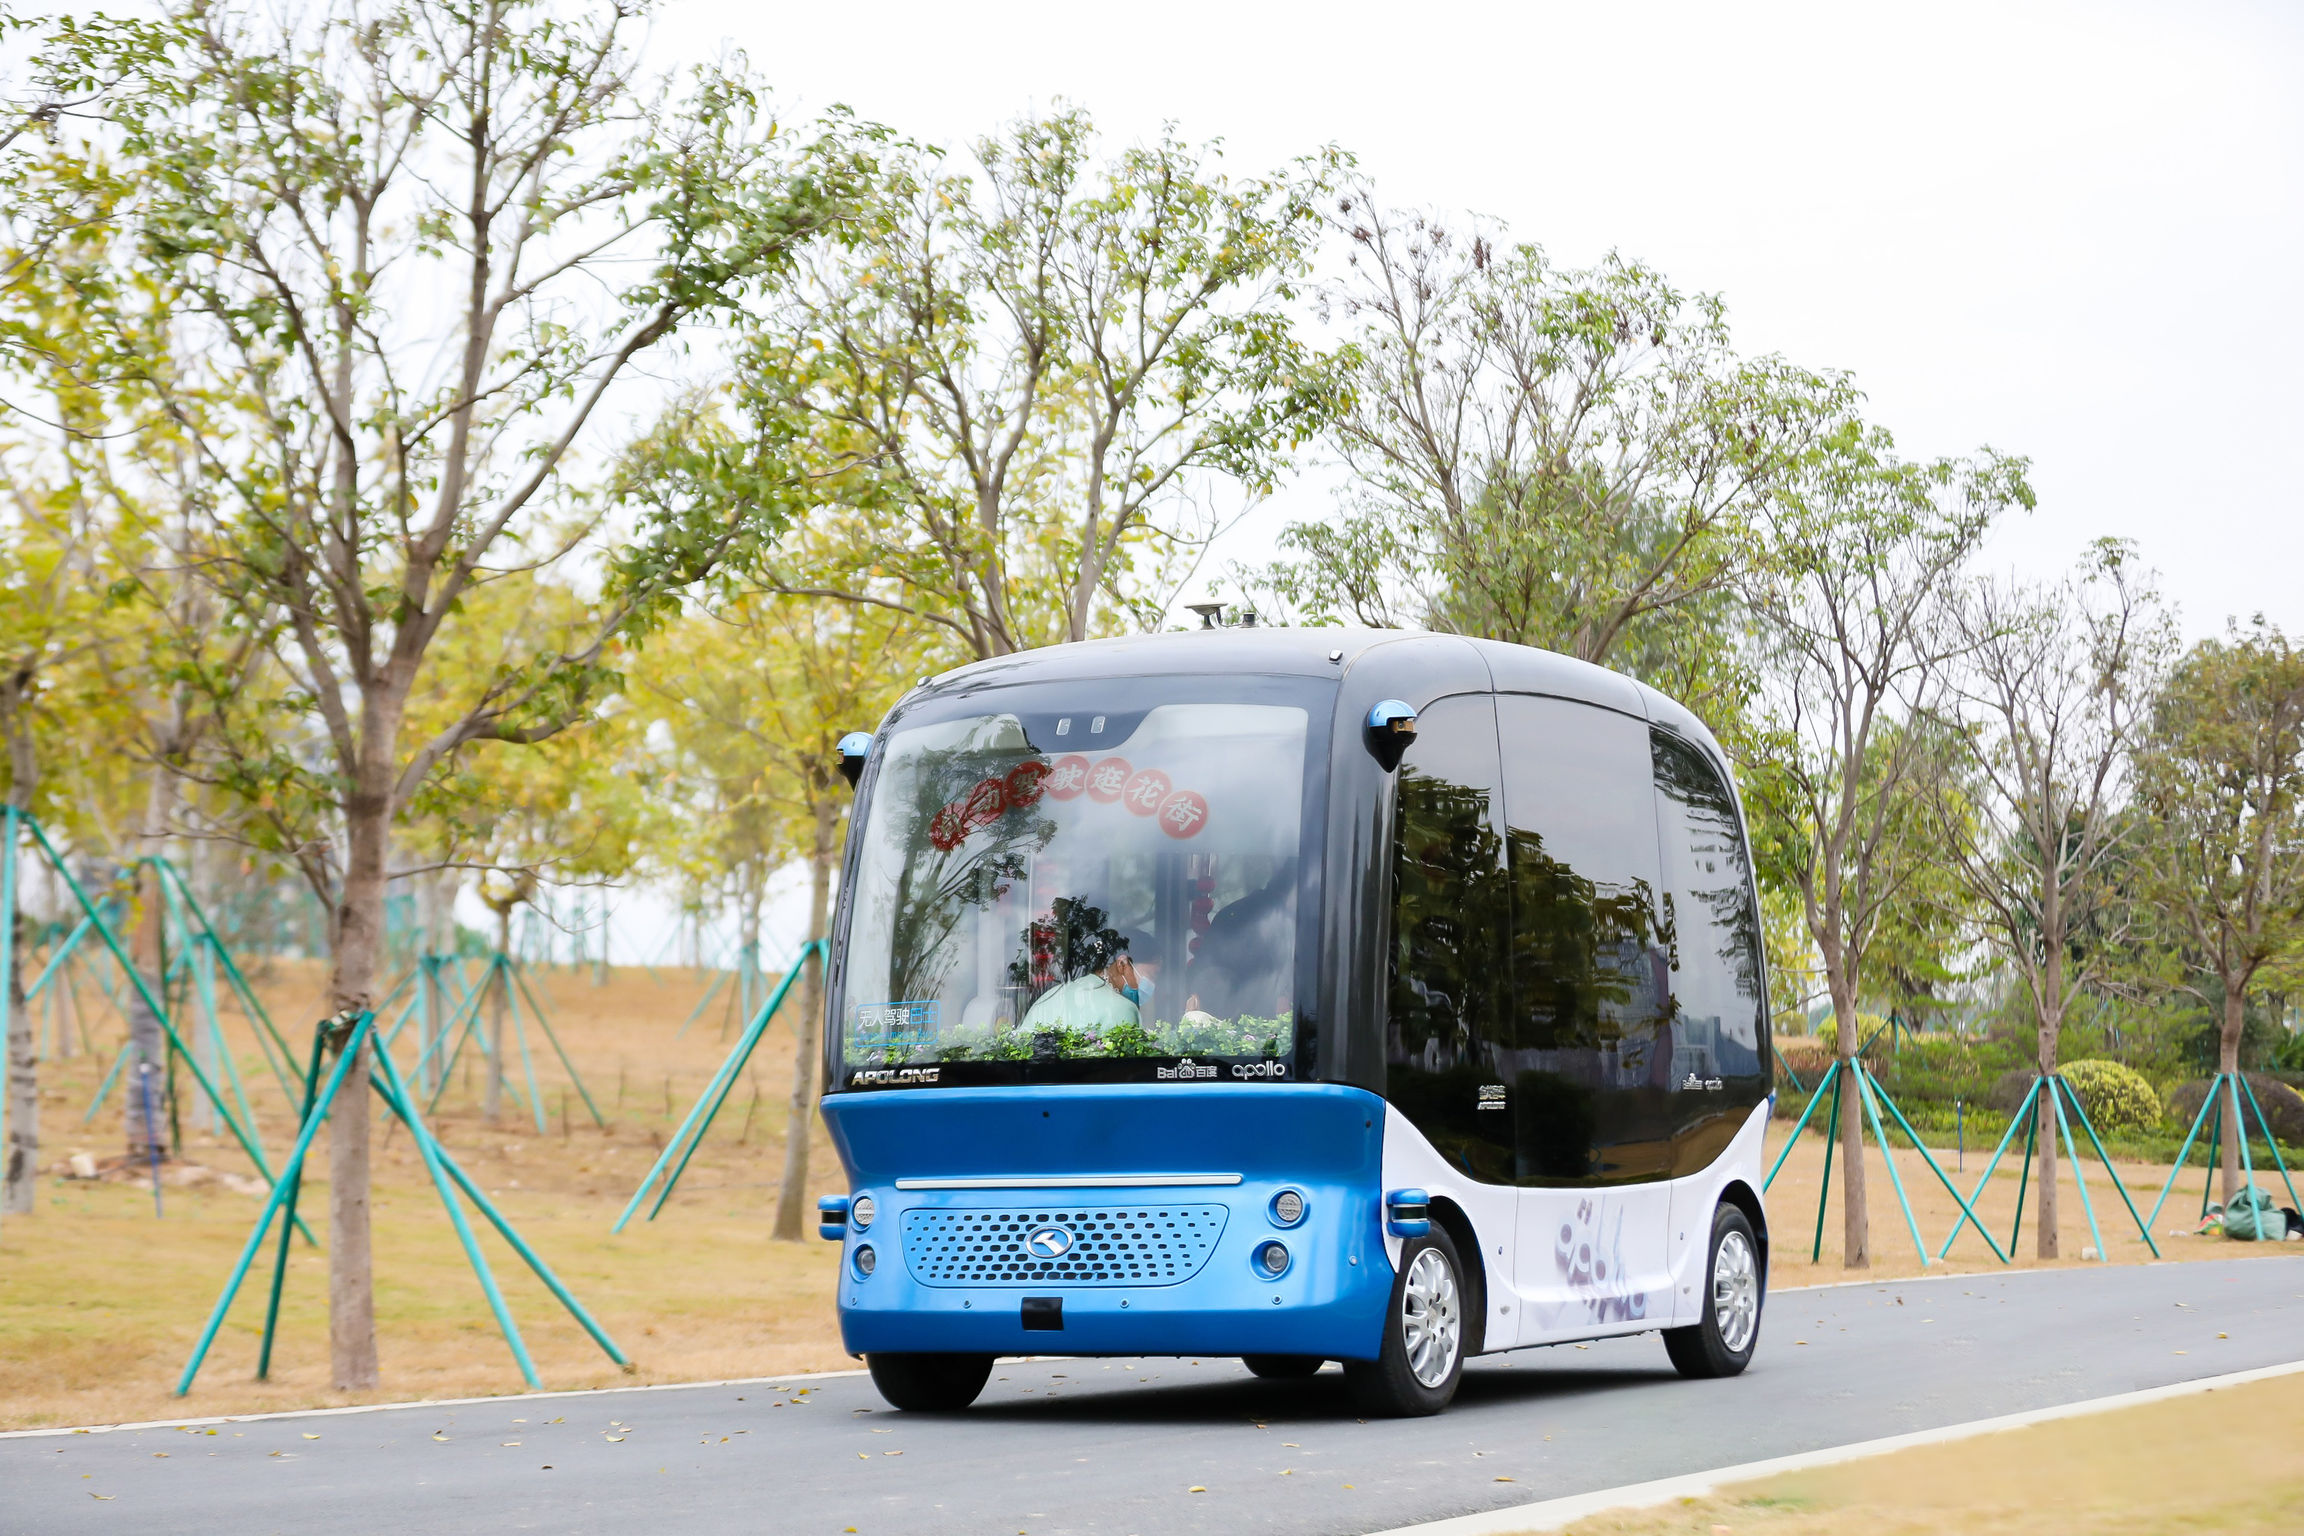 APOLLO Autonomous Minibus